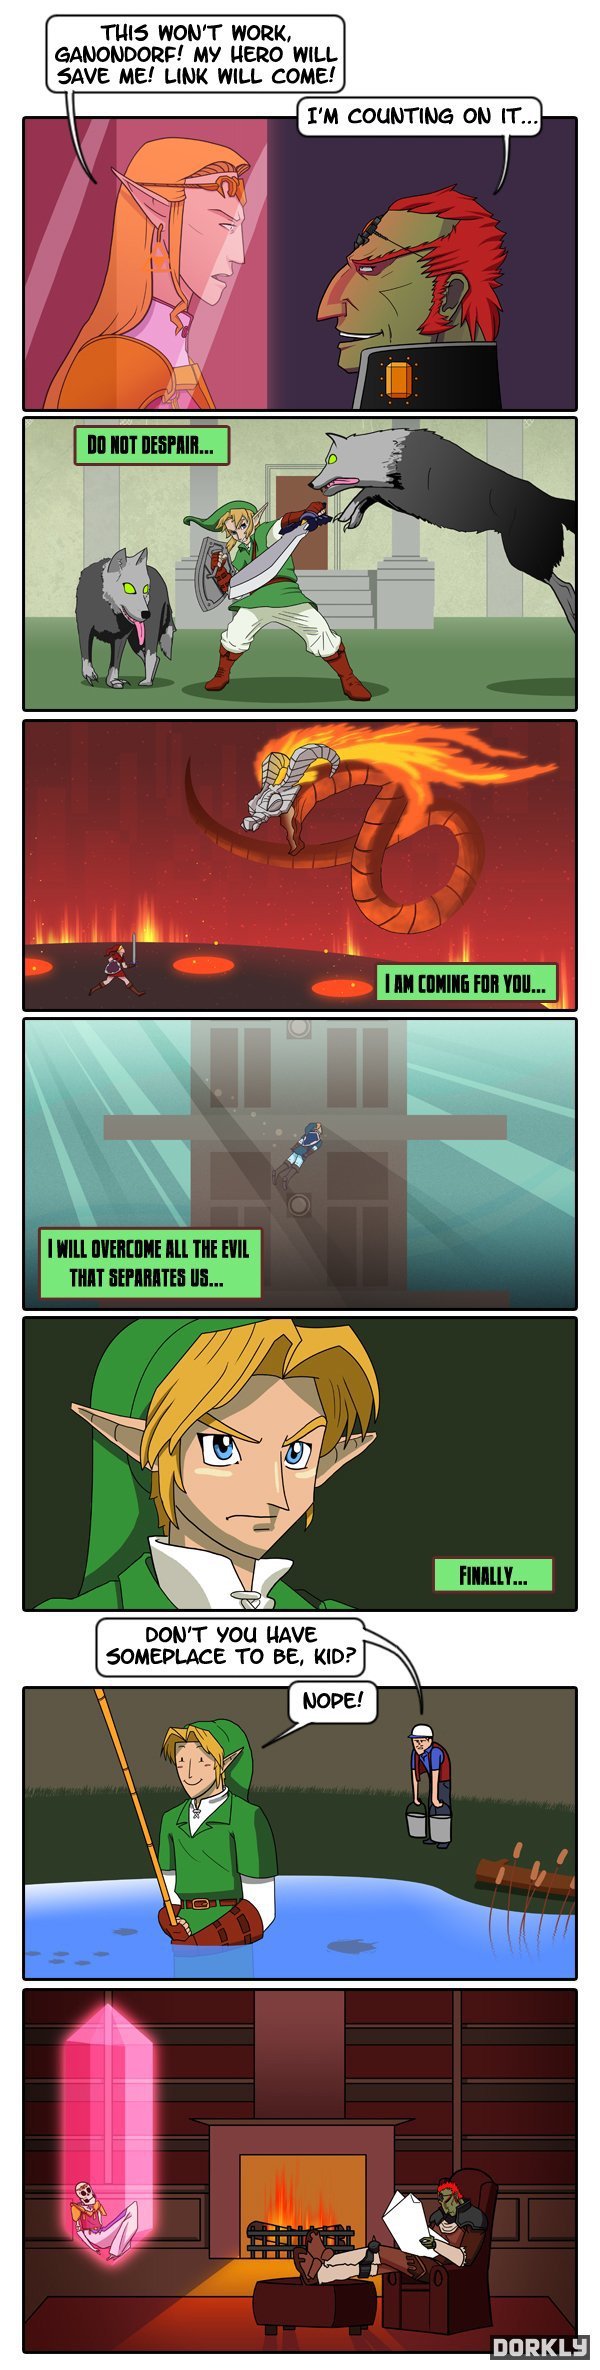 Good old Link!